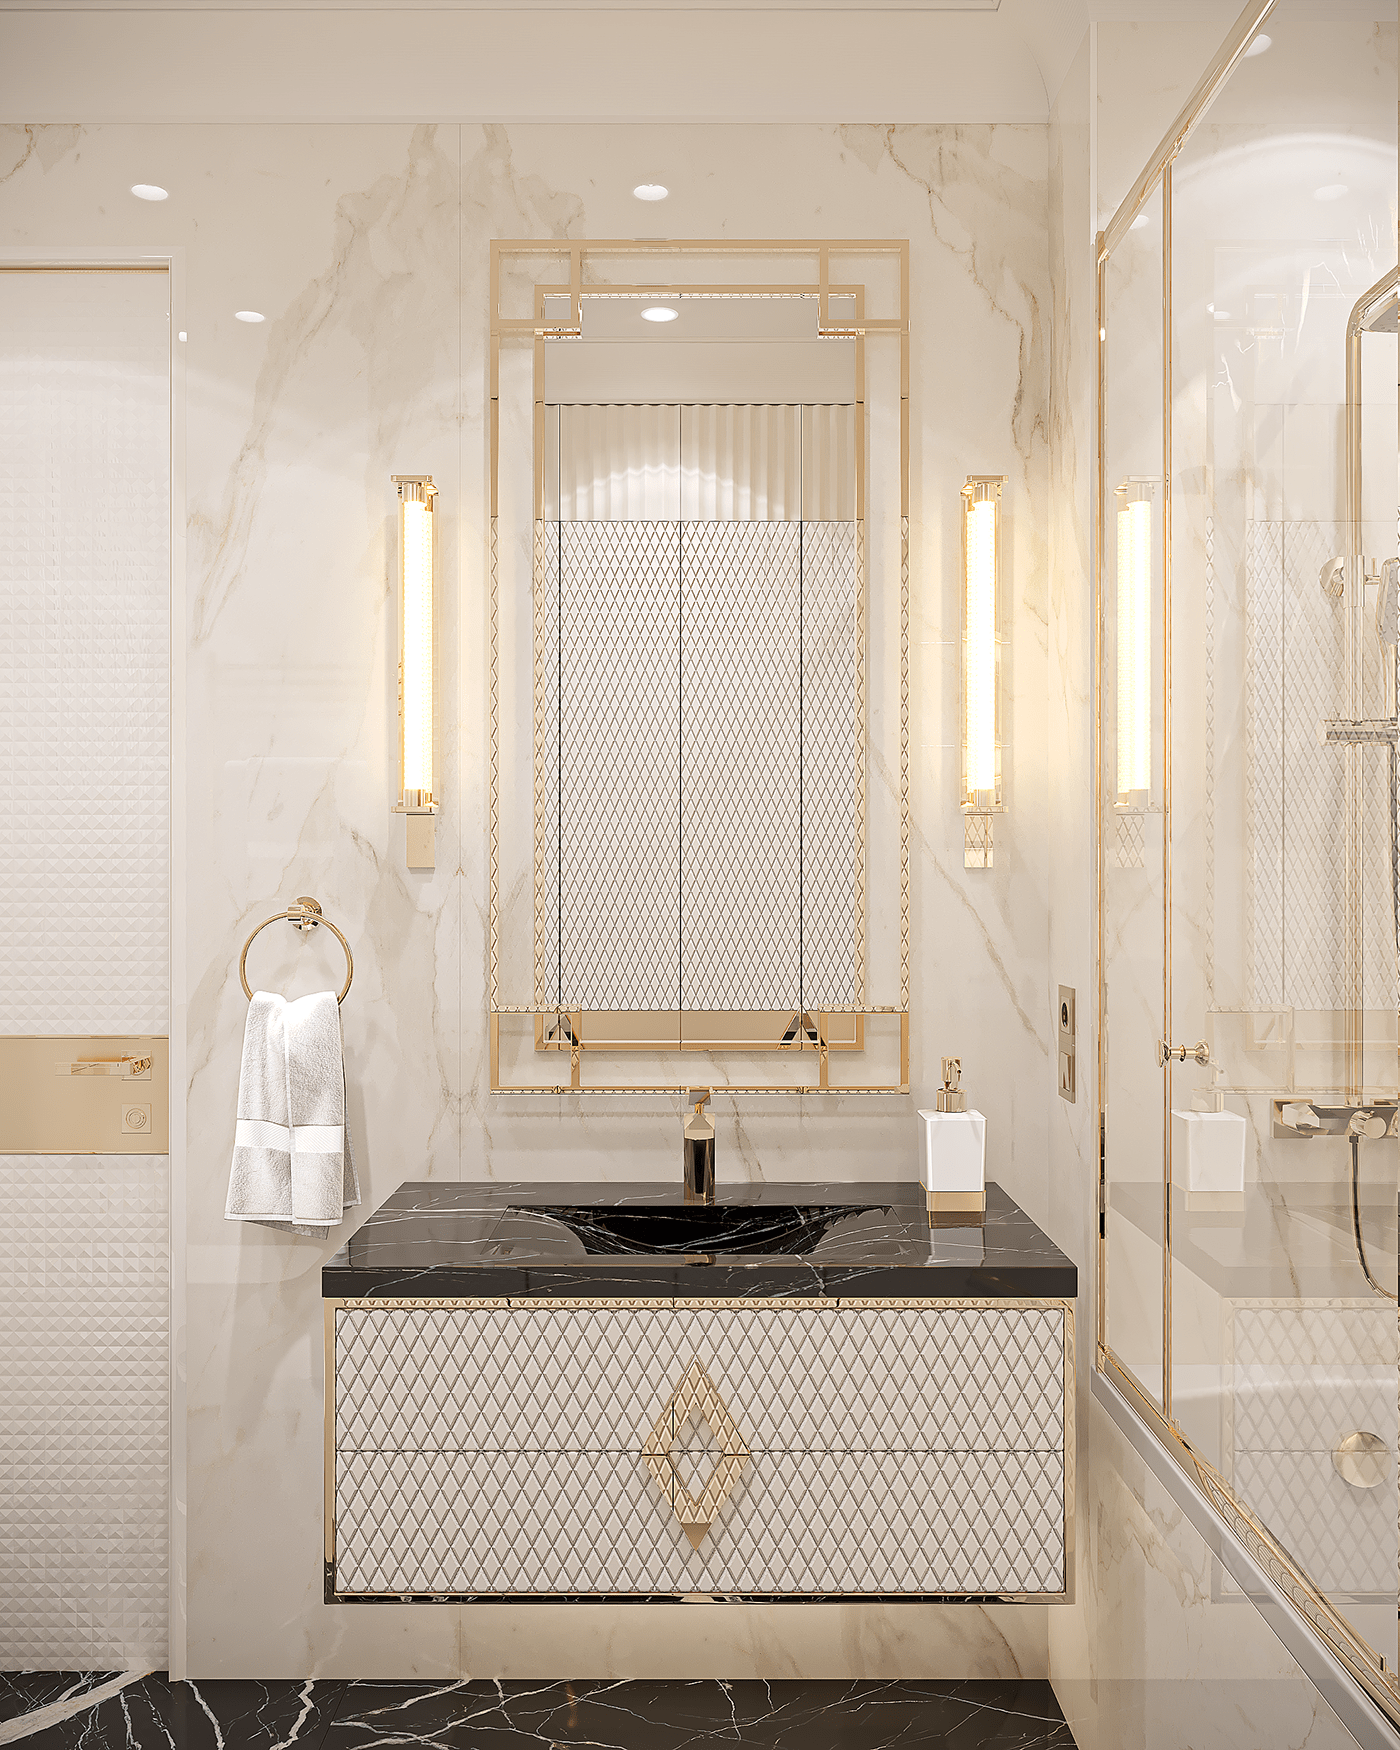 interior design  architectural design Interior Design Dubai Luxury Design Interior living room apartment bathroom design neoclassic interior дизайн интерьера москва